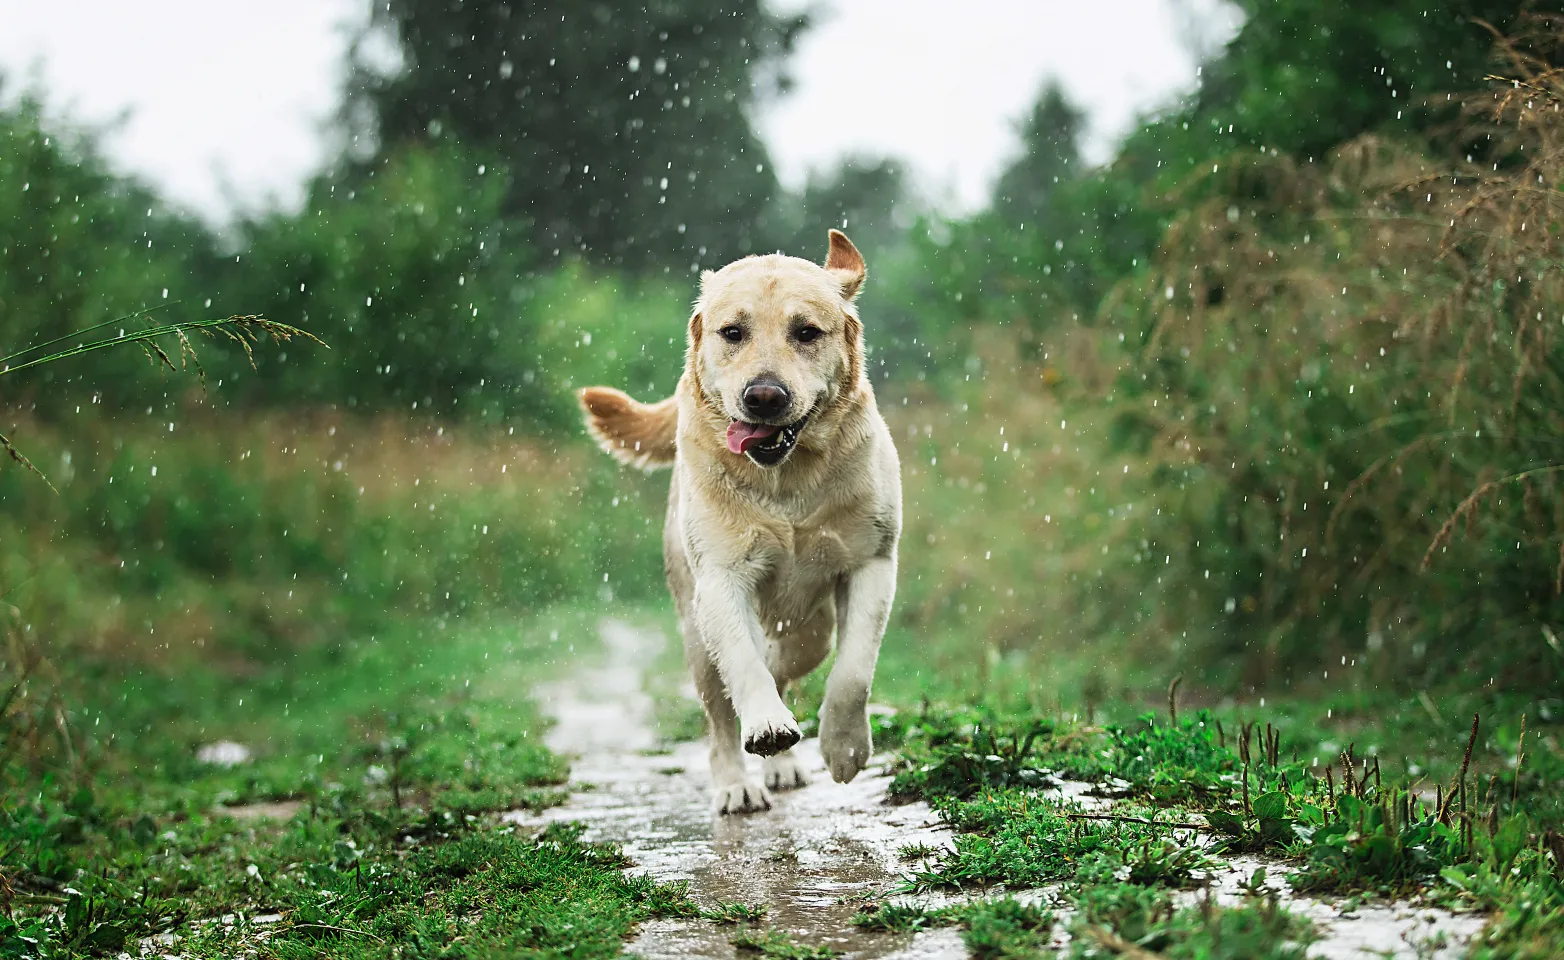 Dog running through puddle